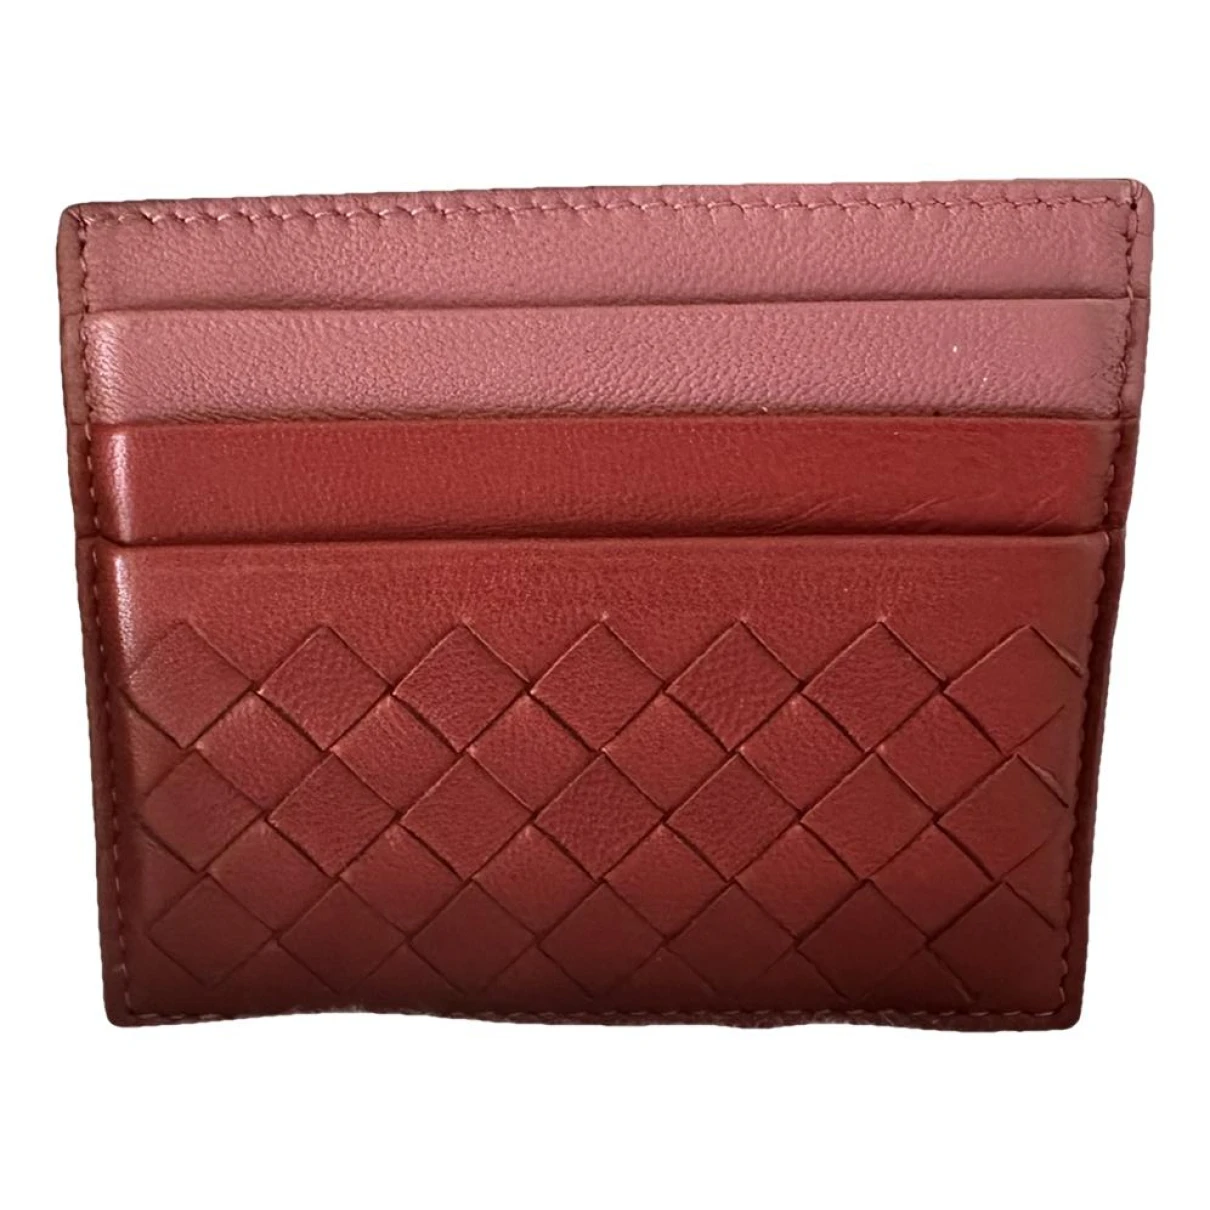 Pre-owned Bottega Veneta Intrecciato Leather Wallet In Red